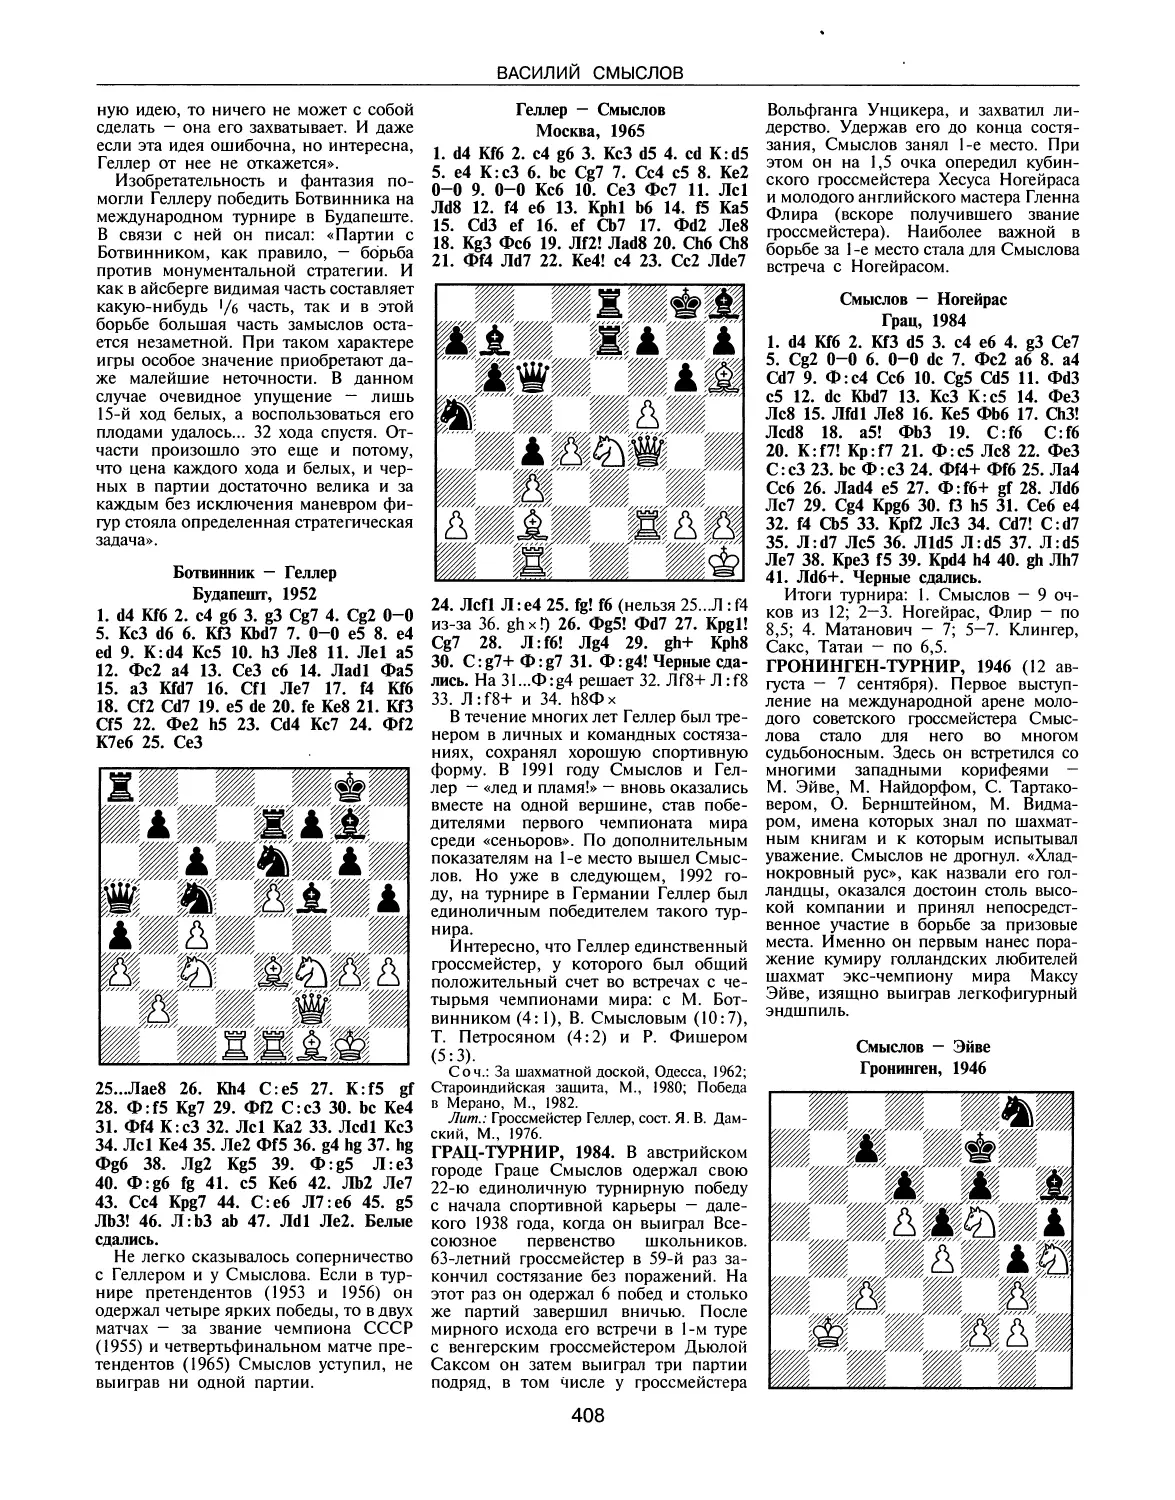 Грац-турнир, 1984
Гронинген-турнир, 1946